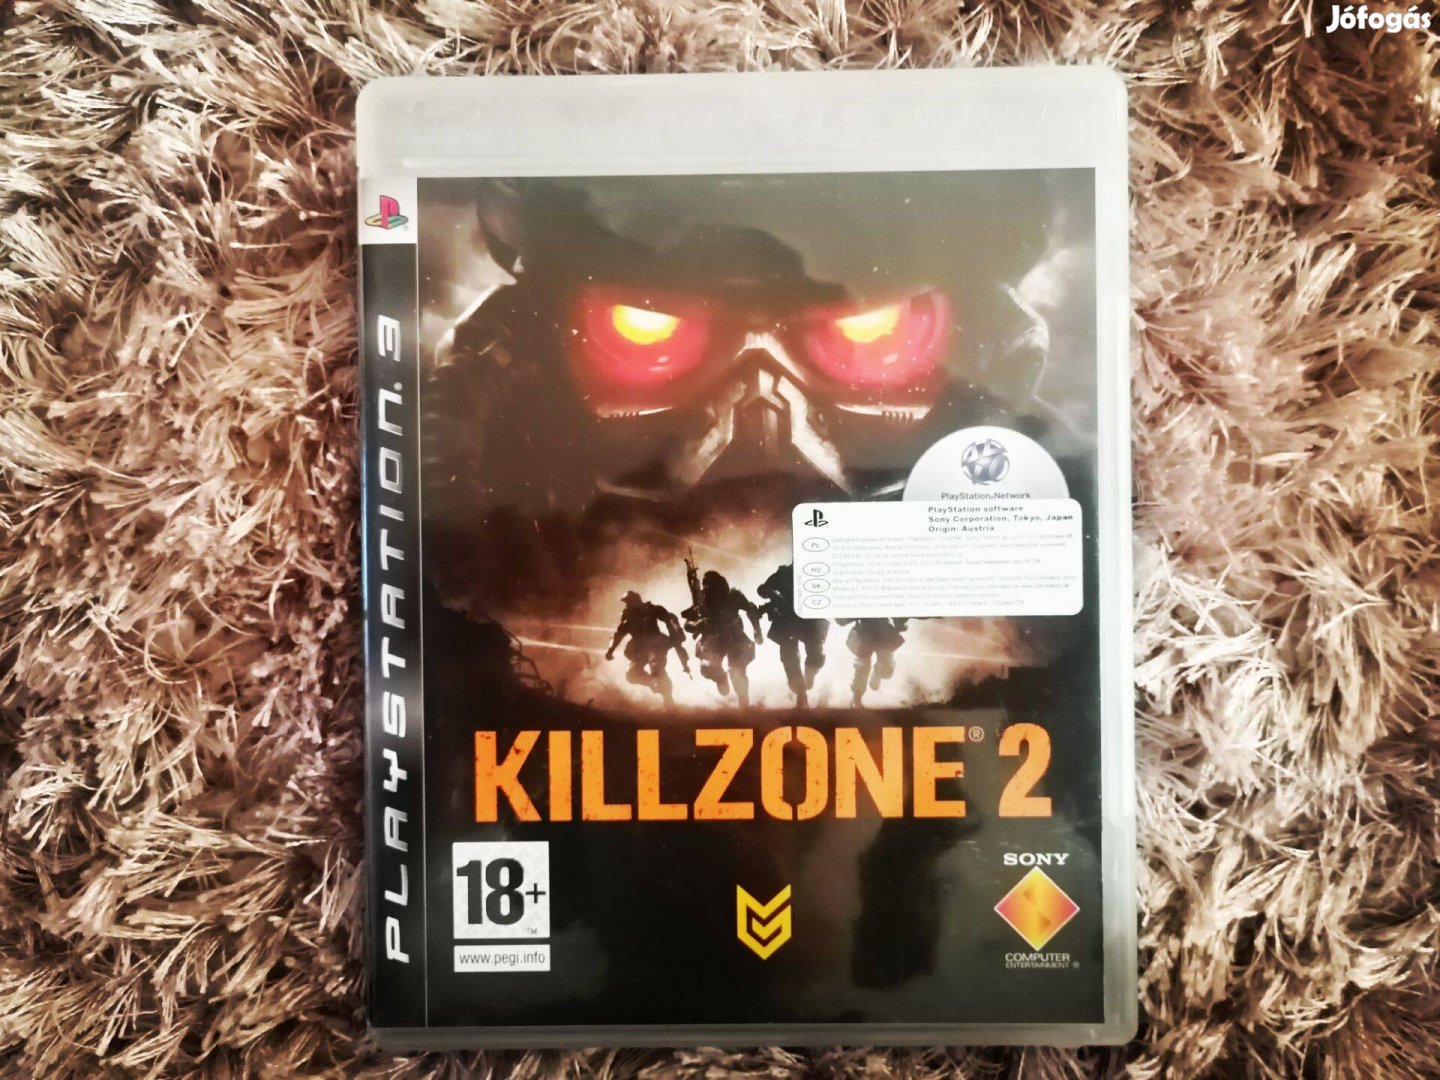 PS3 Killzone 2